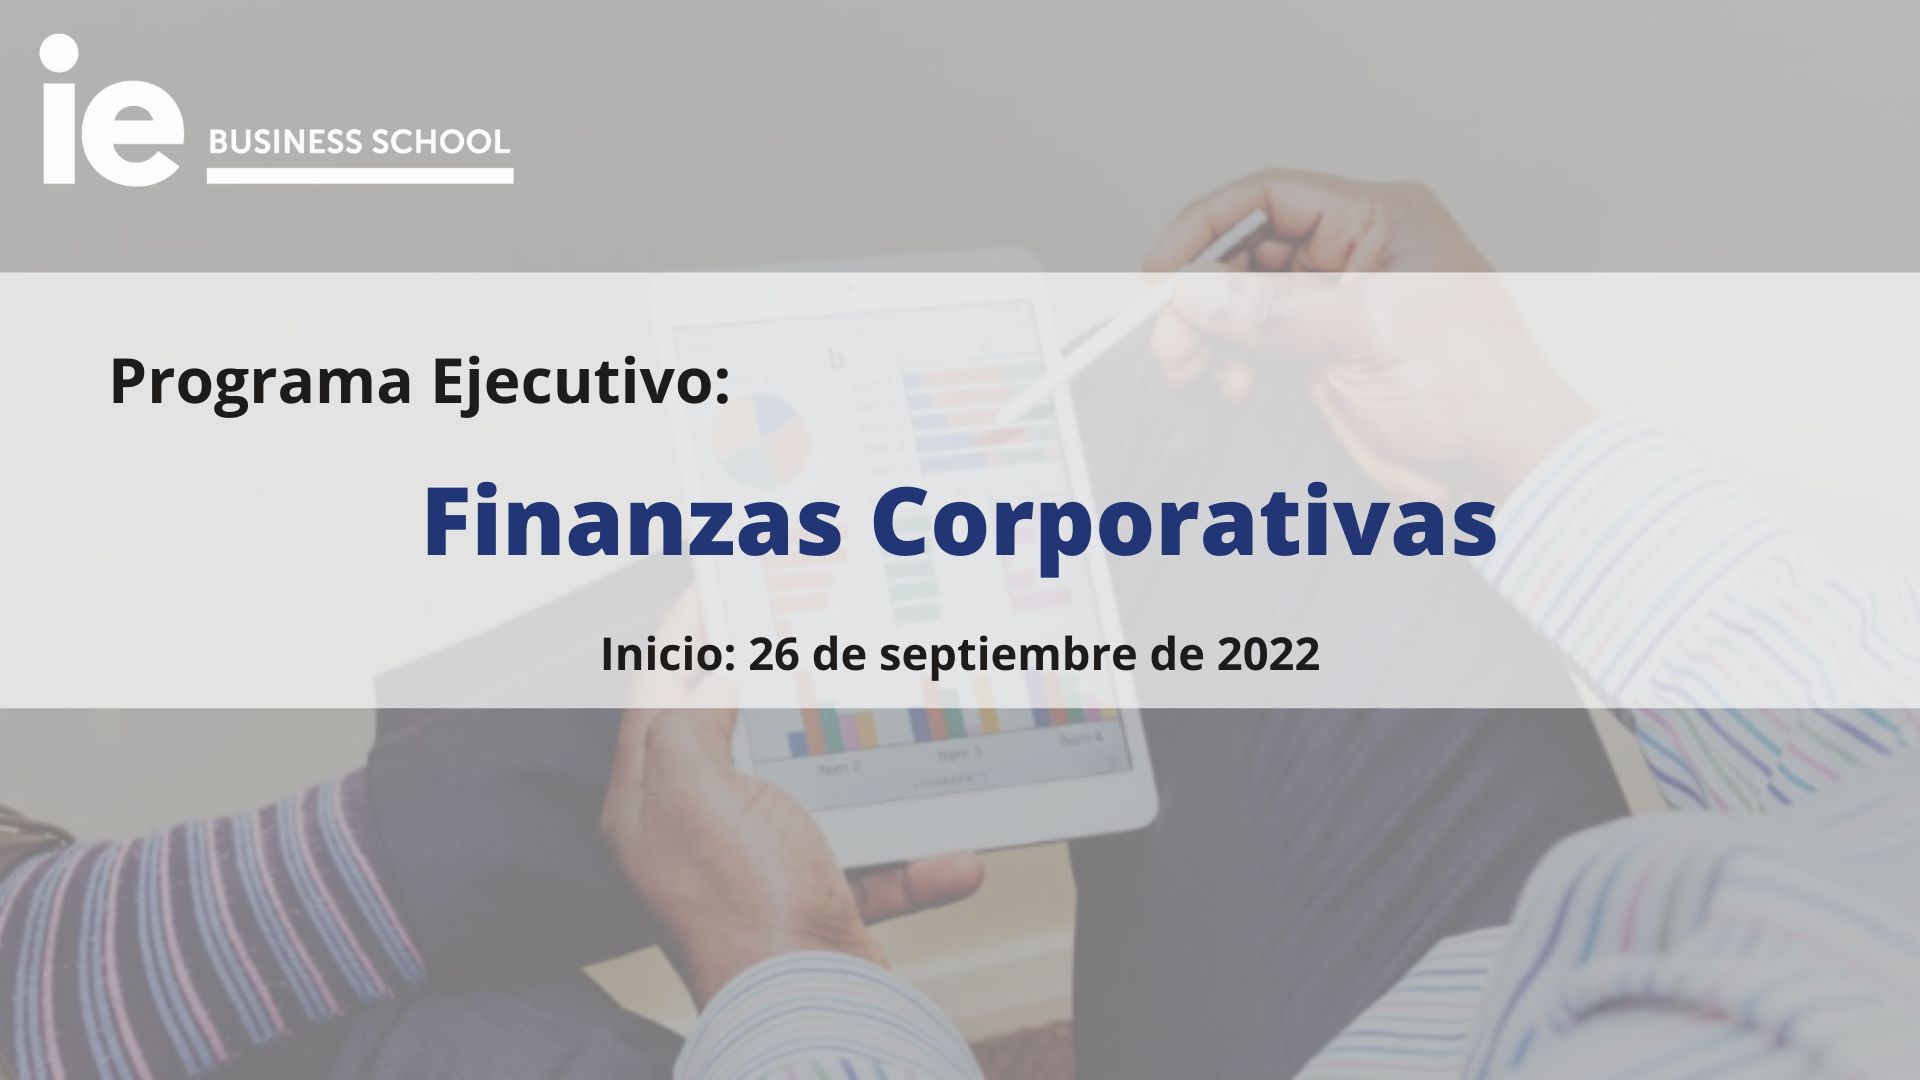 Finanzas Corporativas | Programa Ejecutivo | IE Business School | Cámara de Comercio de Murcia